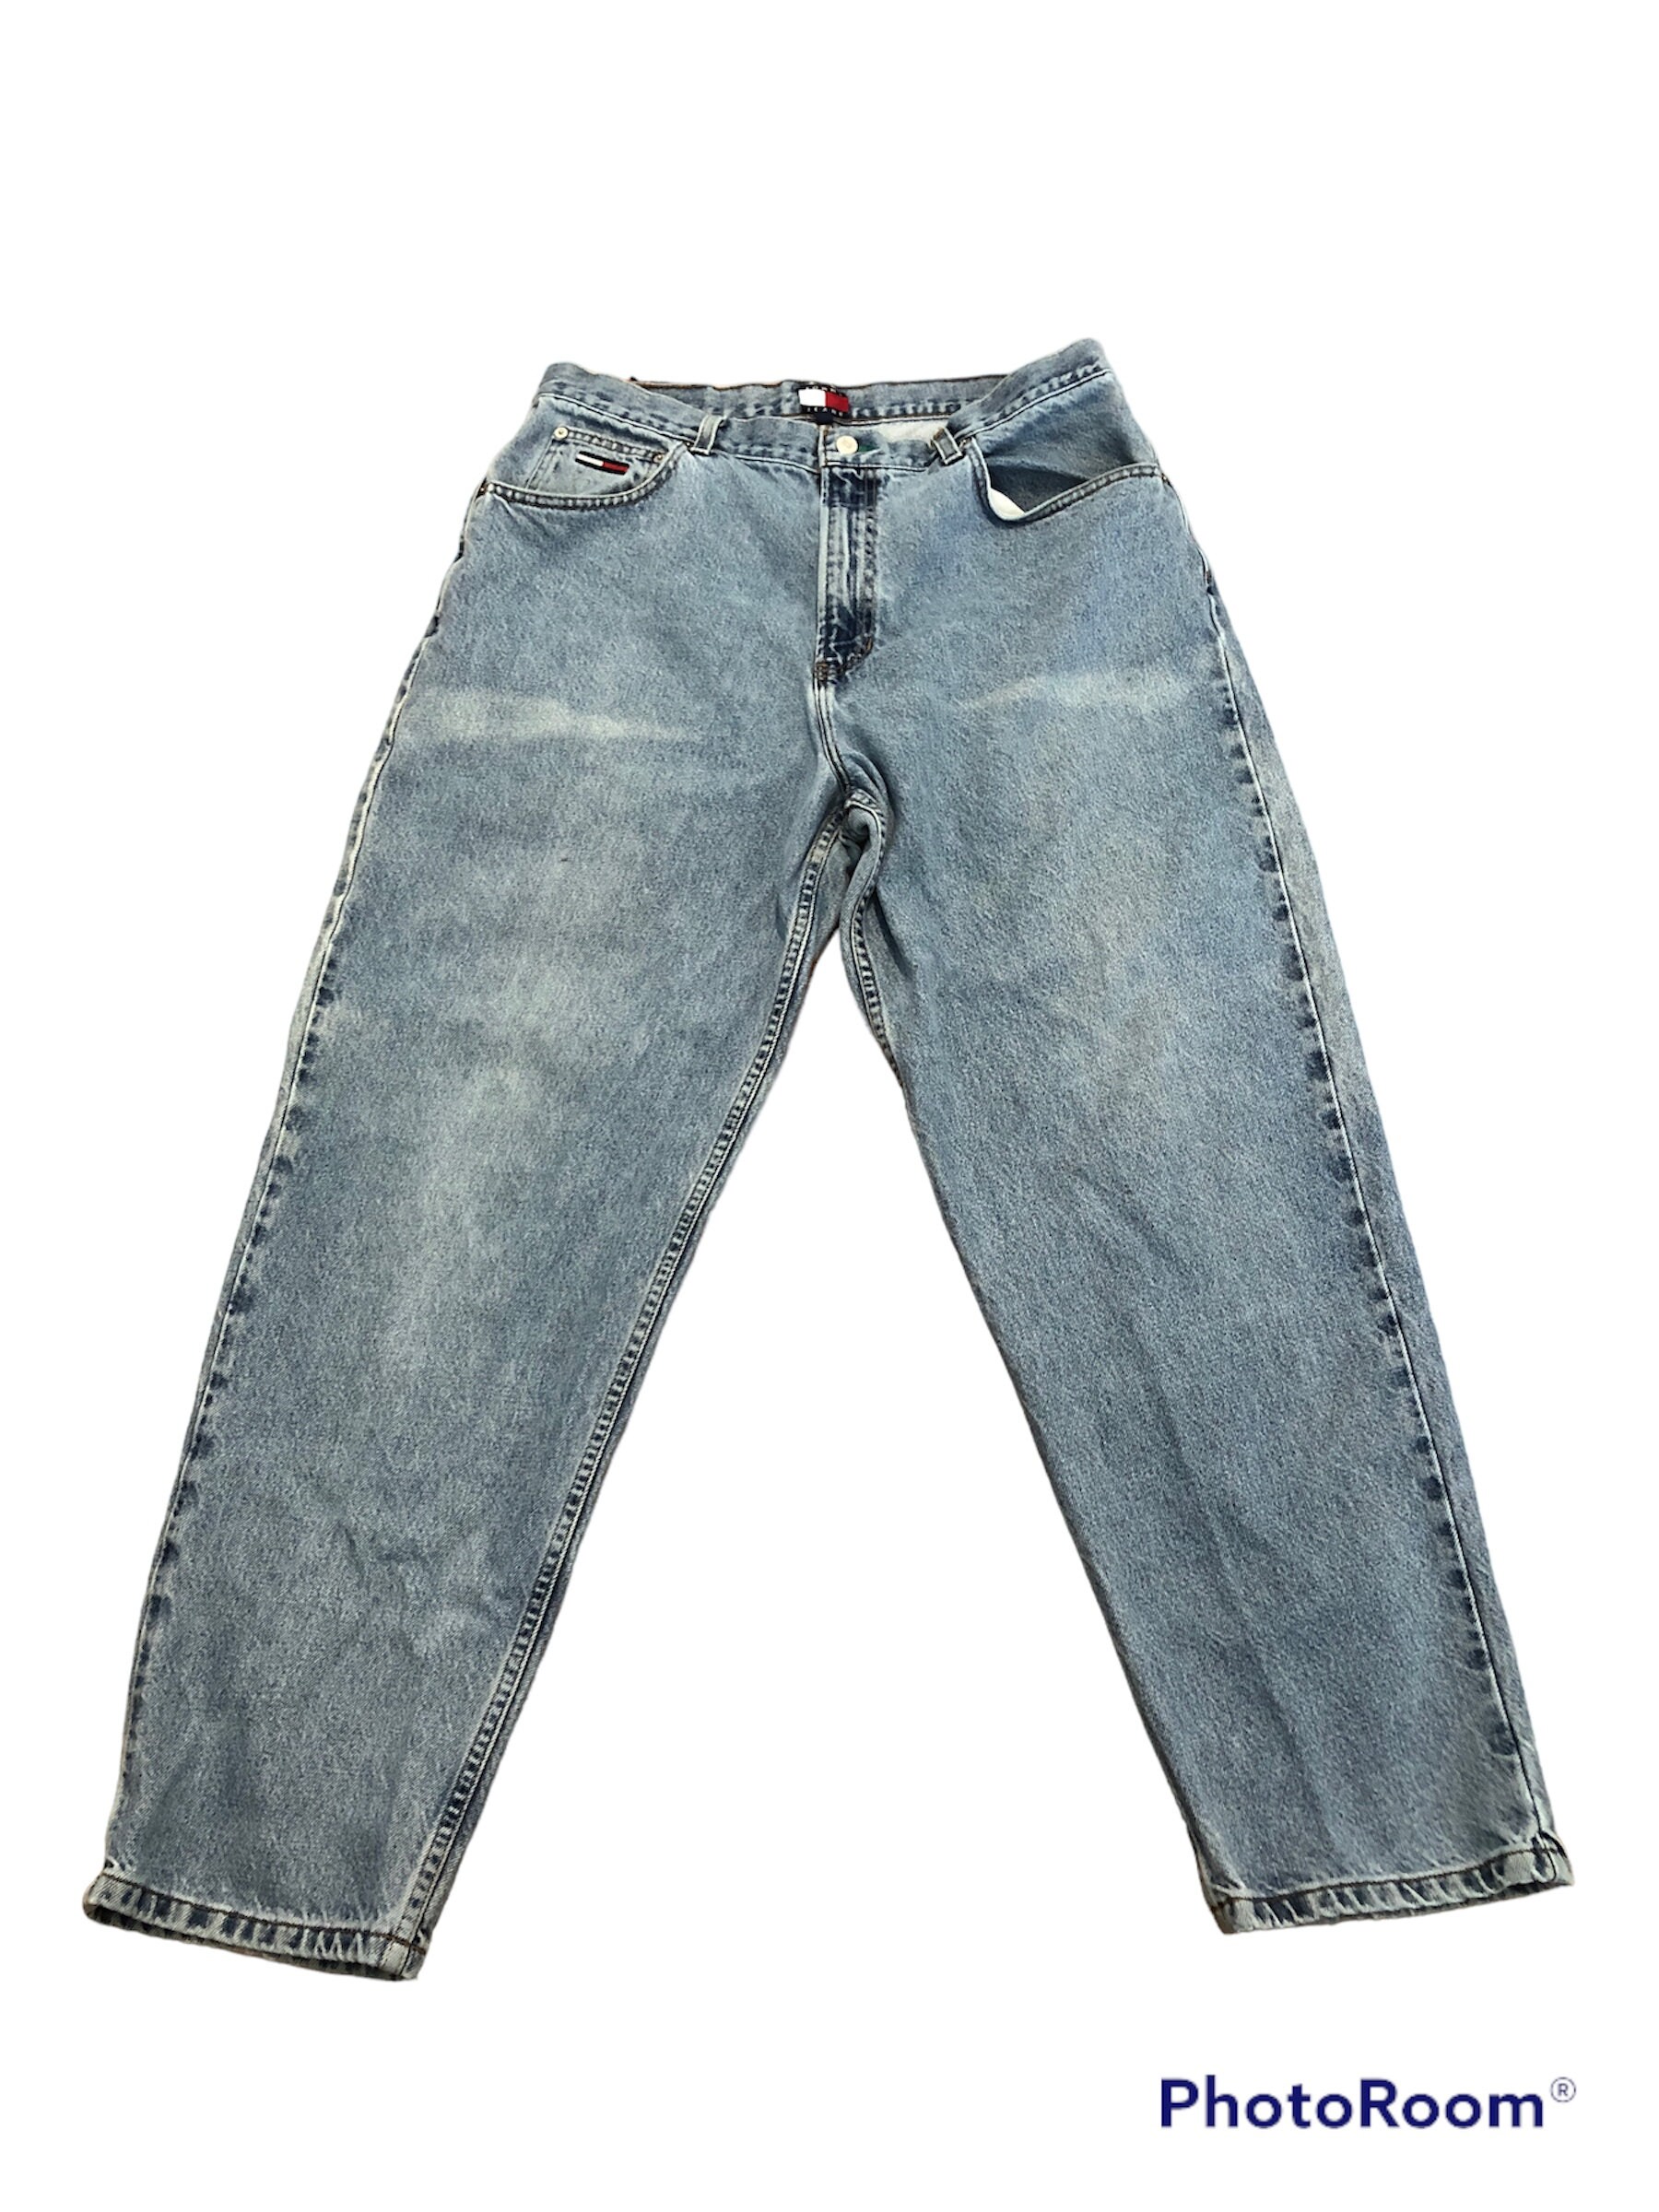 Vintage Hilfiger Freedom Jeans Tommy Jeans Men's Etsy